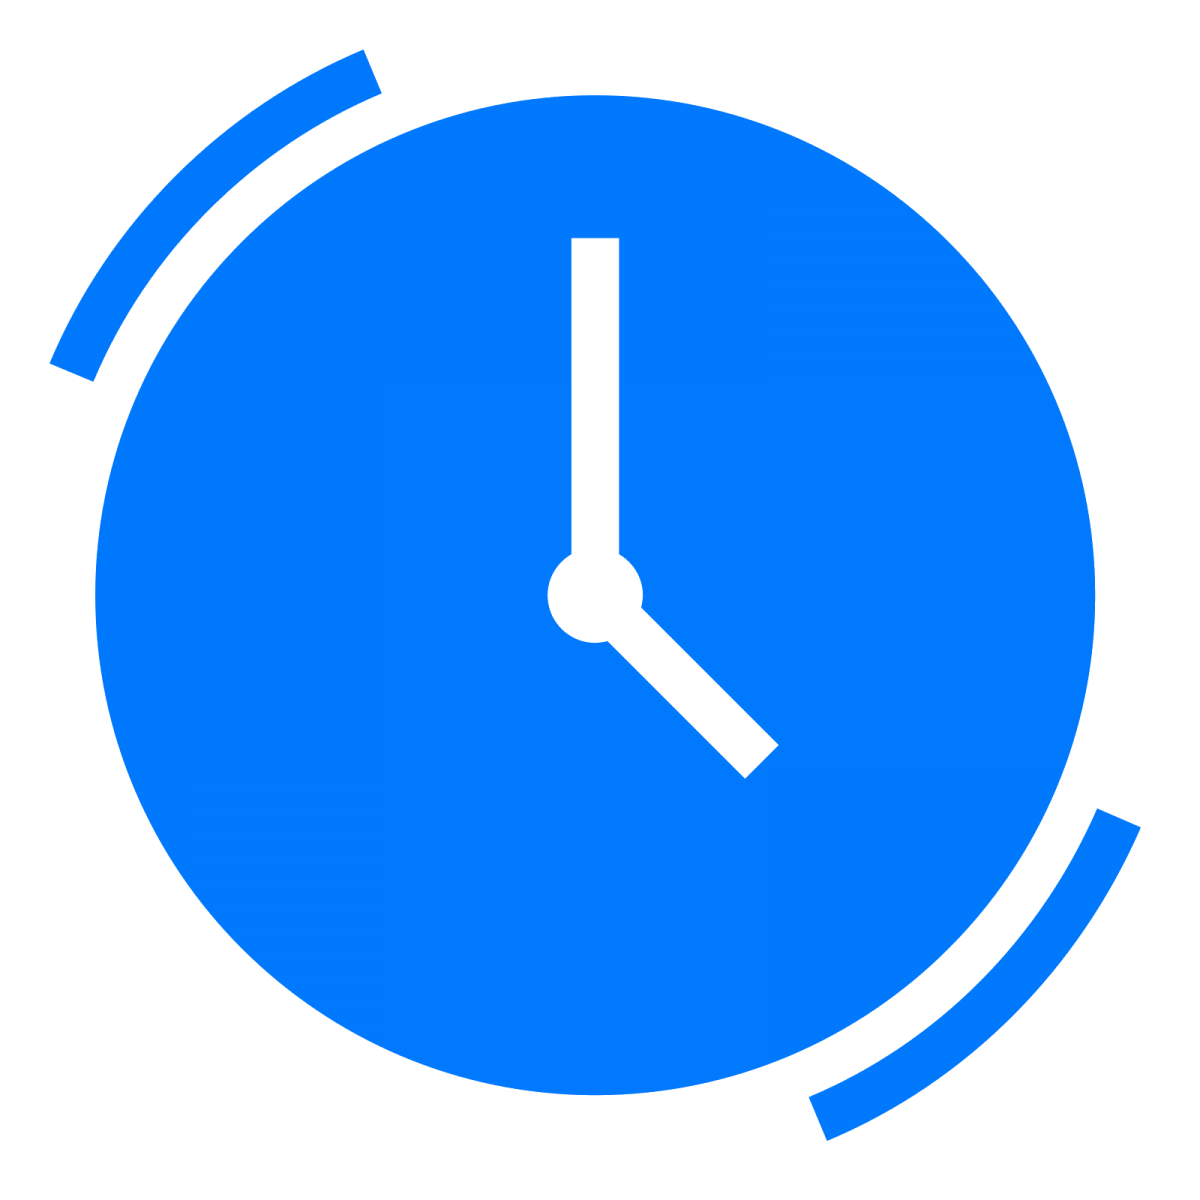 Значок часов. Часы пиктограмма. Иконка часов для режима работы. Часы значок синий.